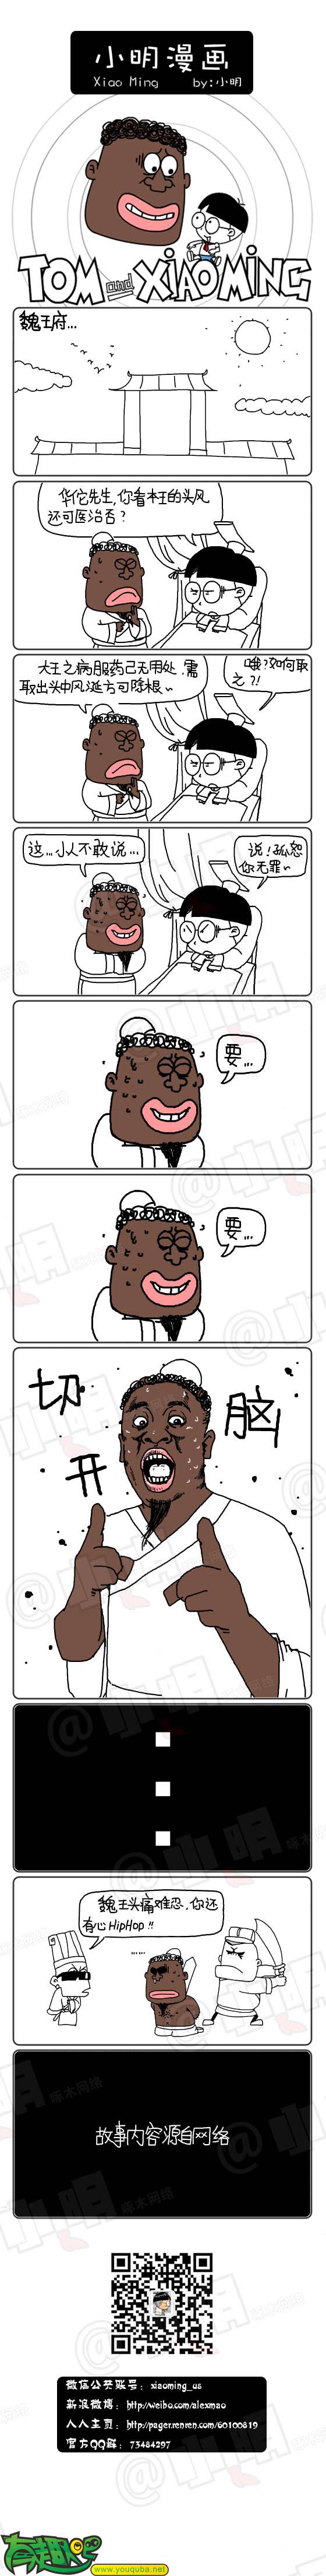 小明系列漫画:治病